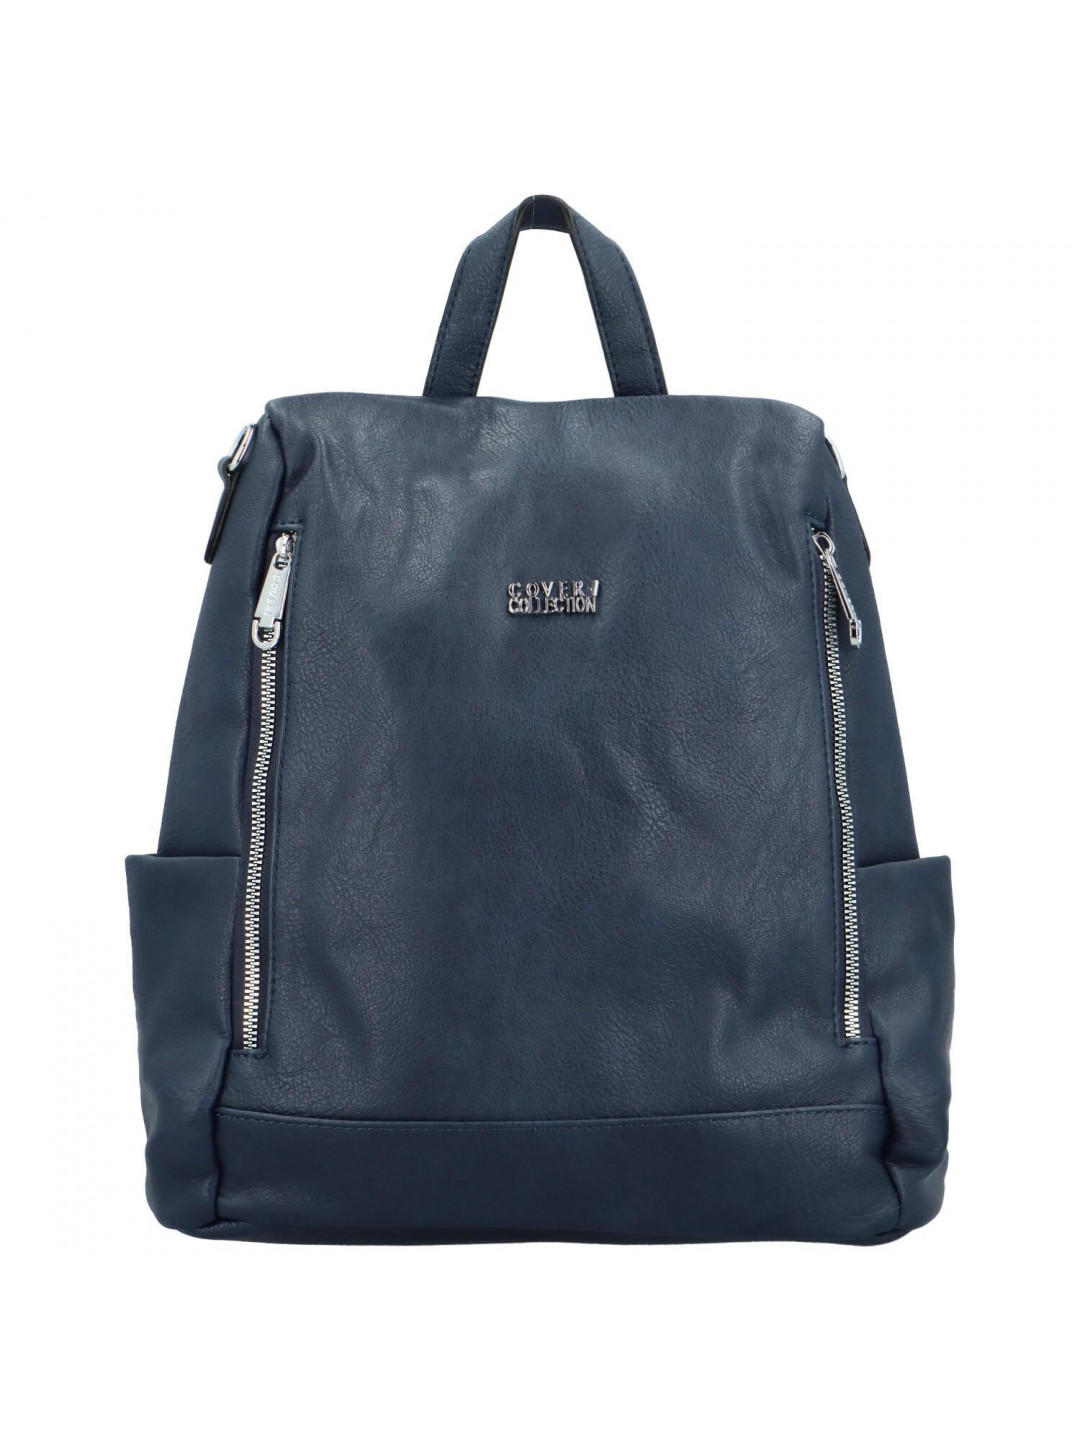 Dámský kabelko batoh tmavě modrý – Coveri Tatiana